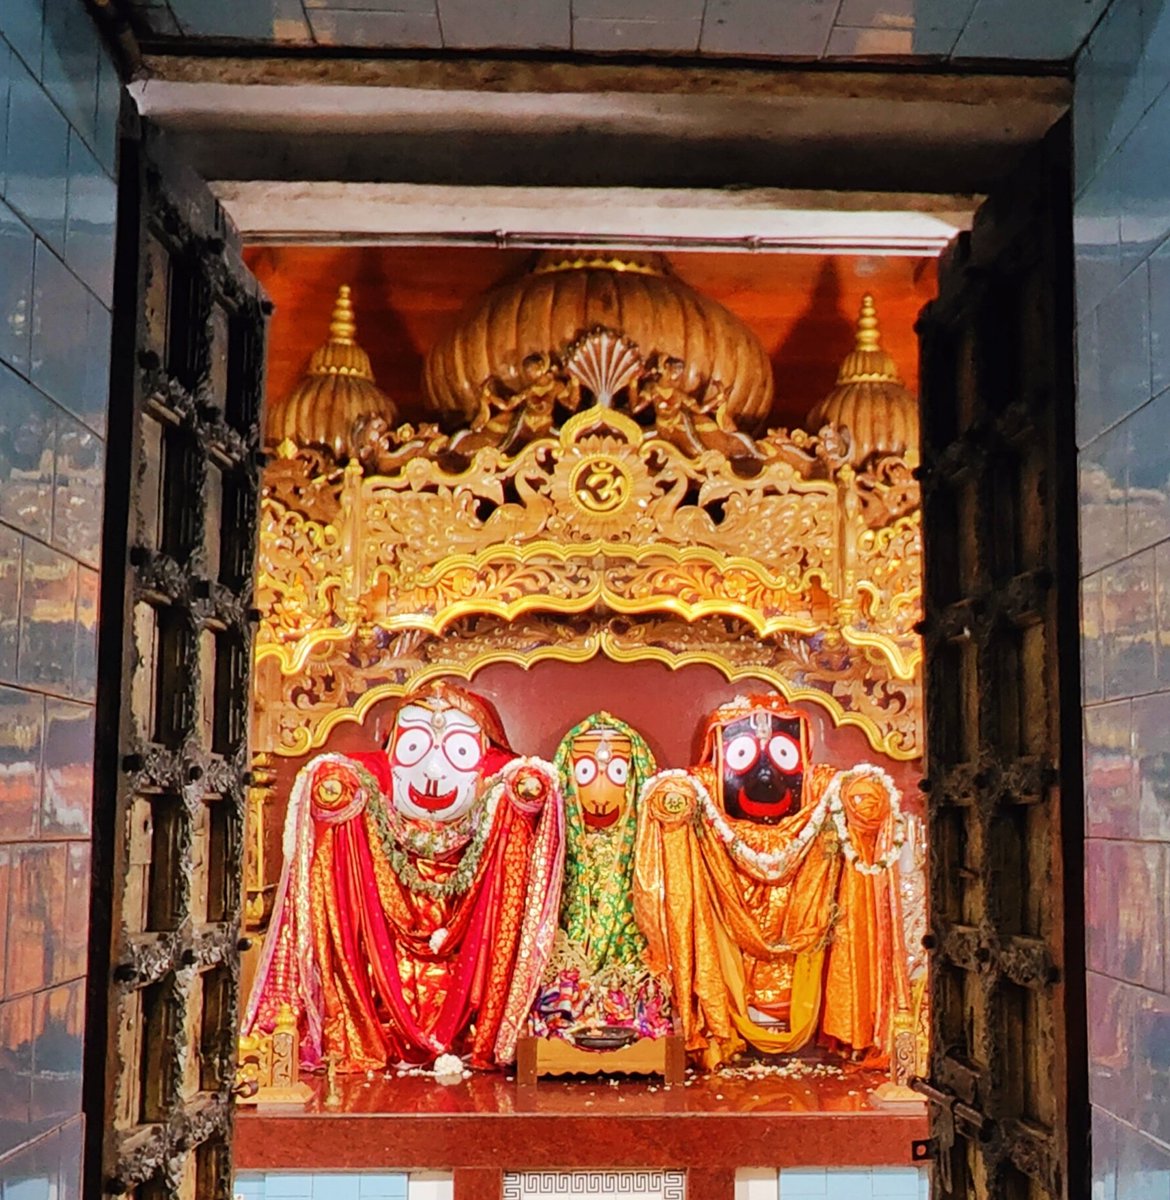 Jagganath Mahaprabhu. Buguda, Ganjam, Odisha.